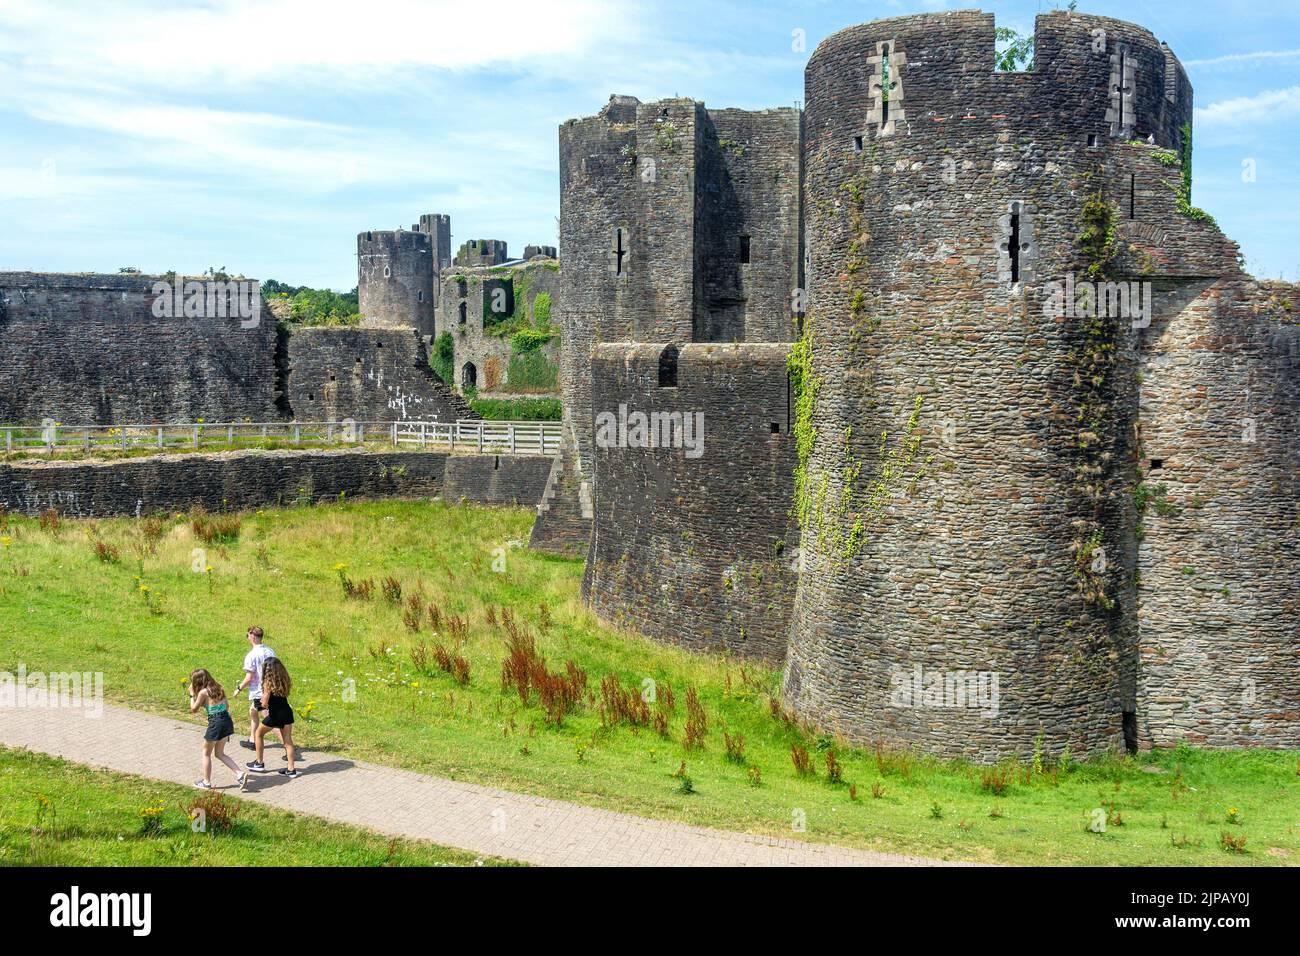 Murallas del castillo de Caerphilly, Caerphilly (Caerffili), condado de Caerphilly, Gales (Cymru), Reino Unido Foto de stock